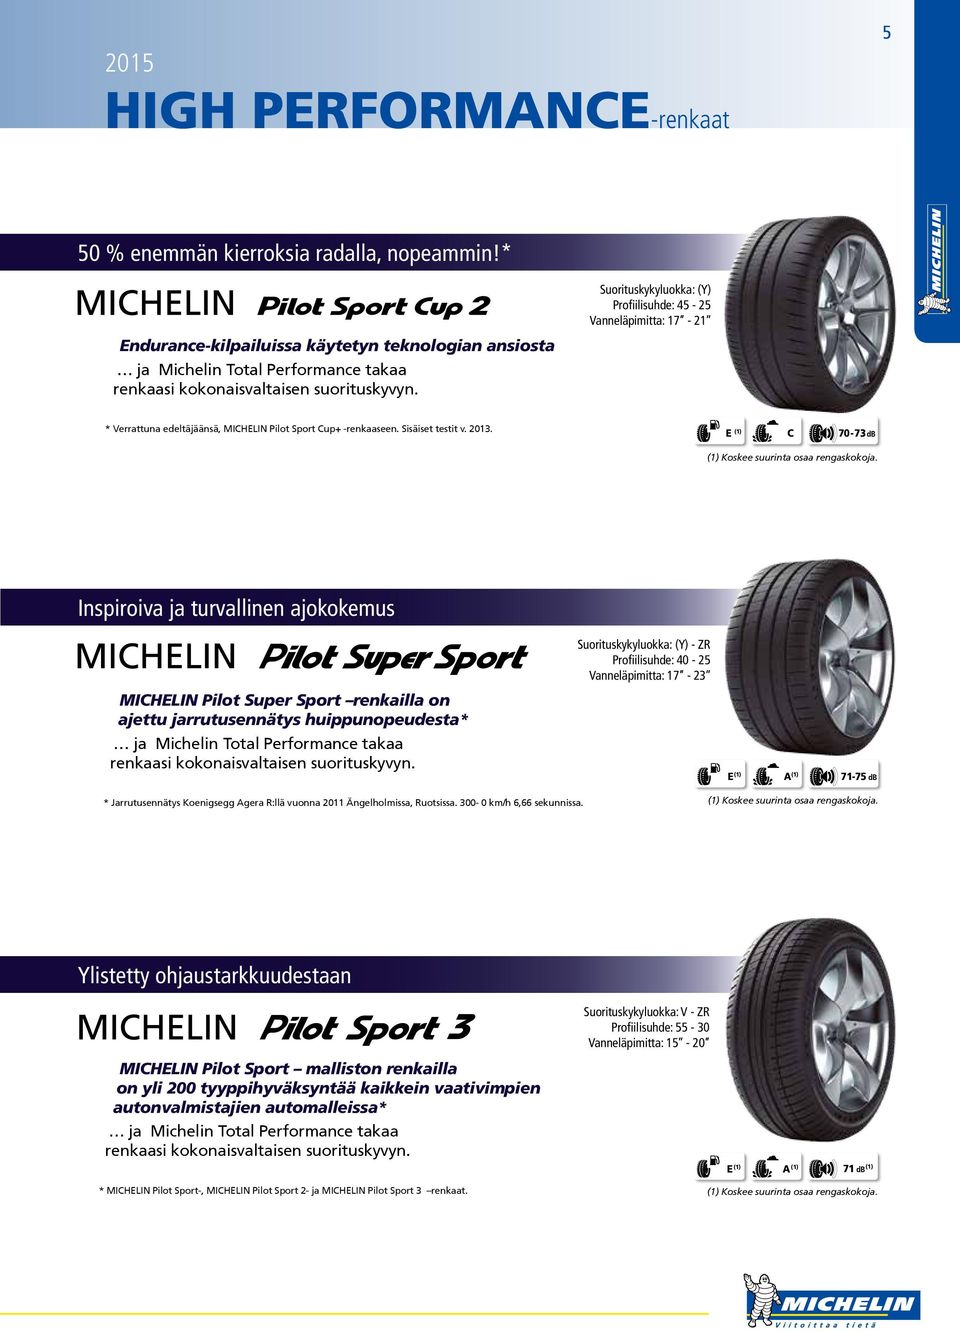 * Verrattuna edeltäjäänsä, MICHELIN Pilot Sport Cup+ -renkaaseen. Sisäiset testit v. 2013. E (1) C 70-73 db (1) Koskee suurinta osaa rengaskokoja.